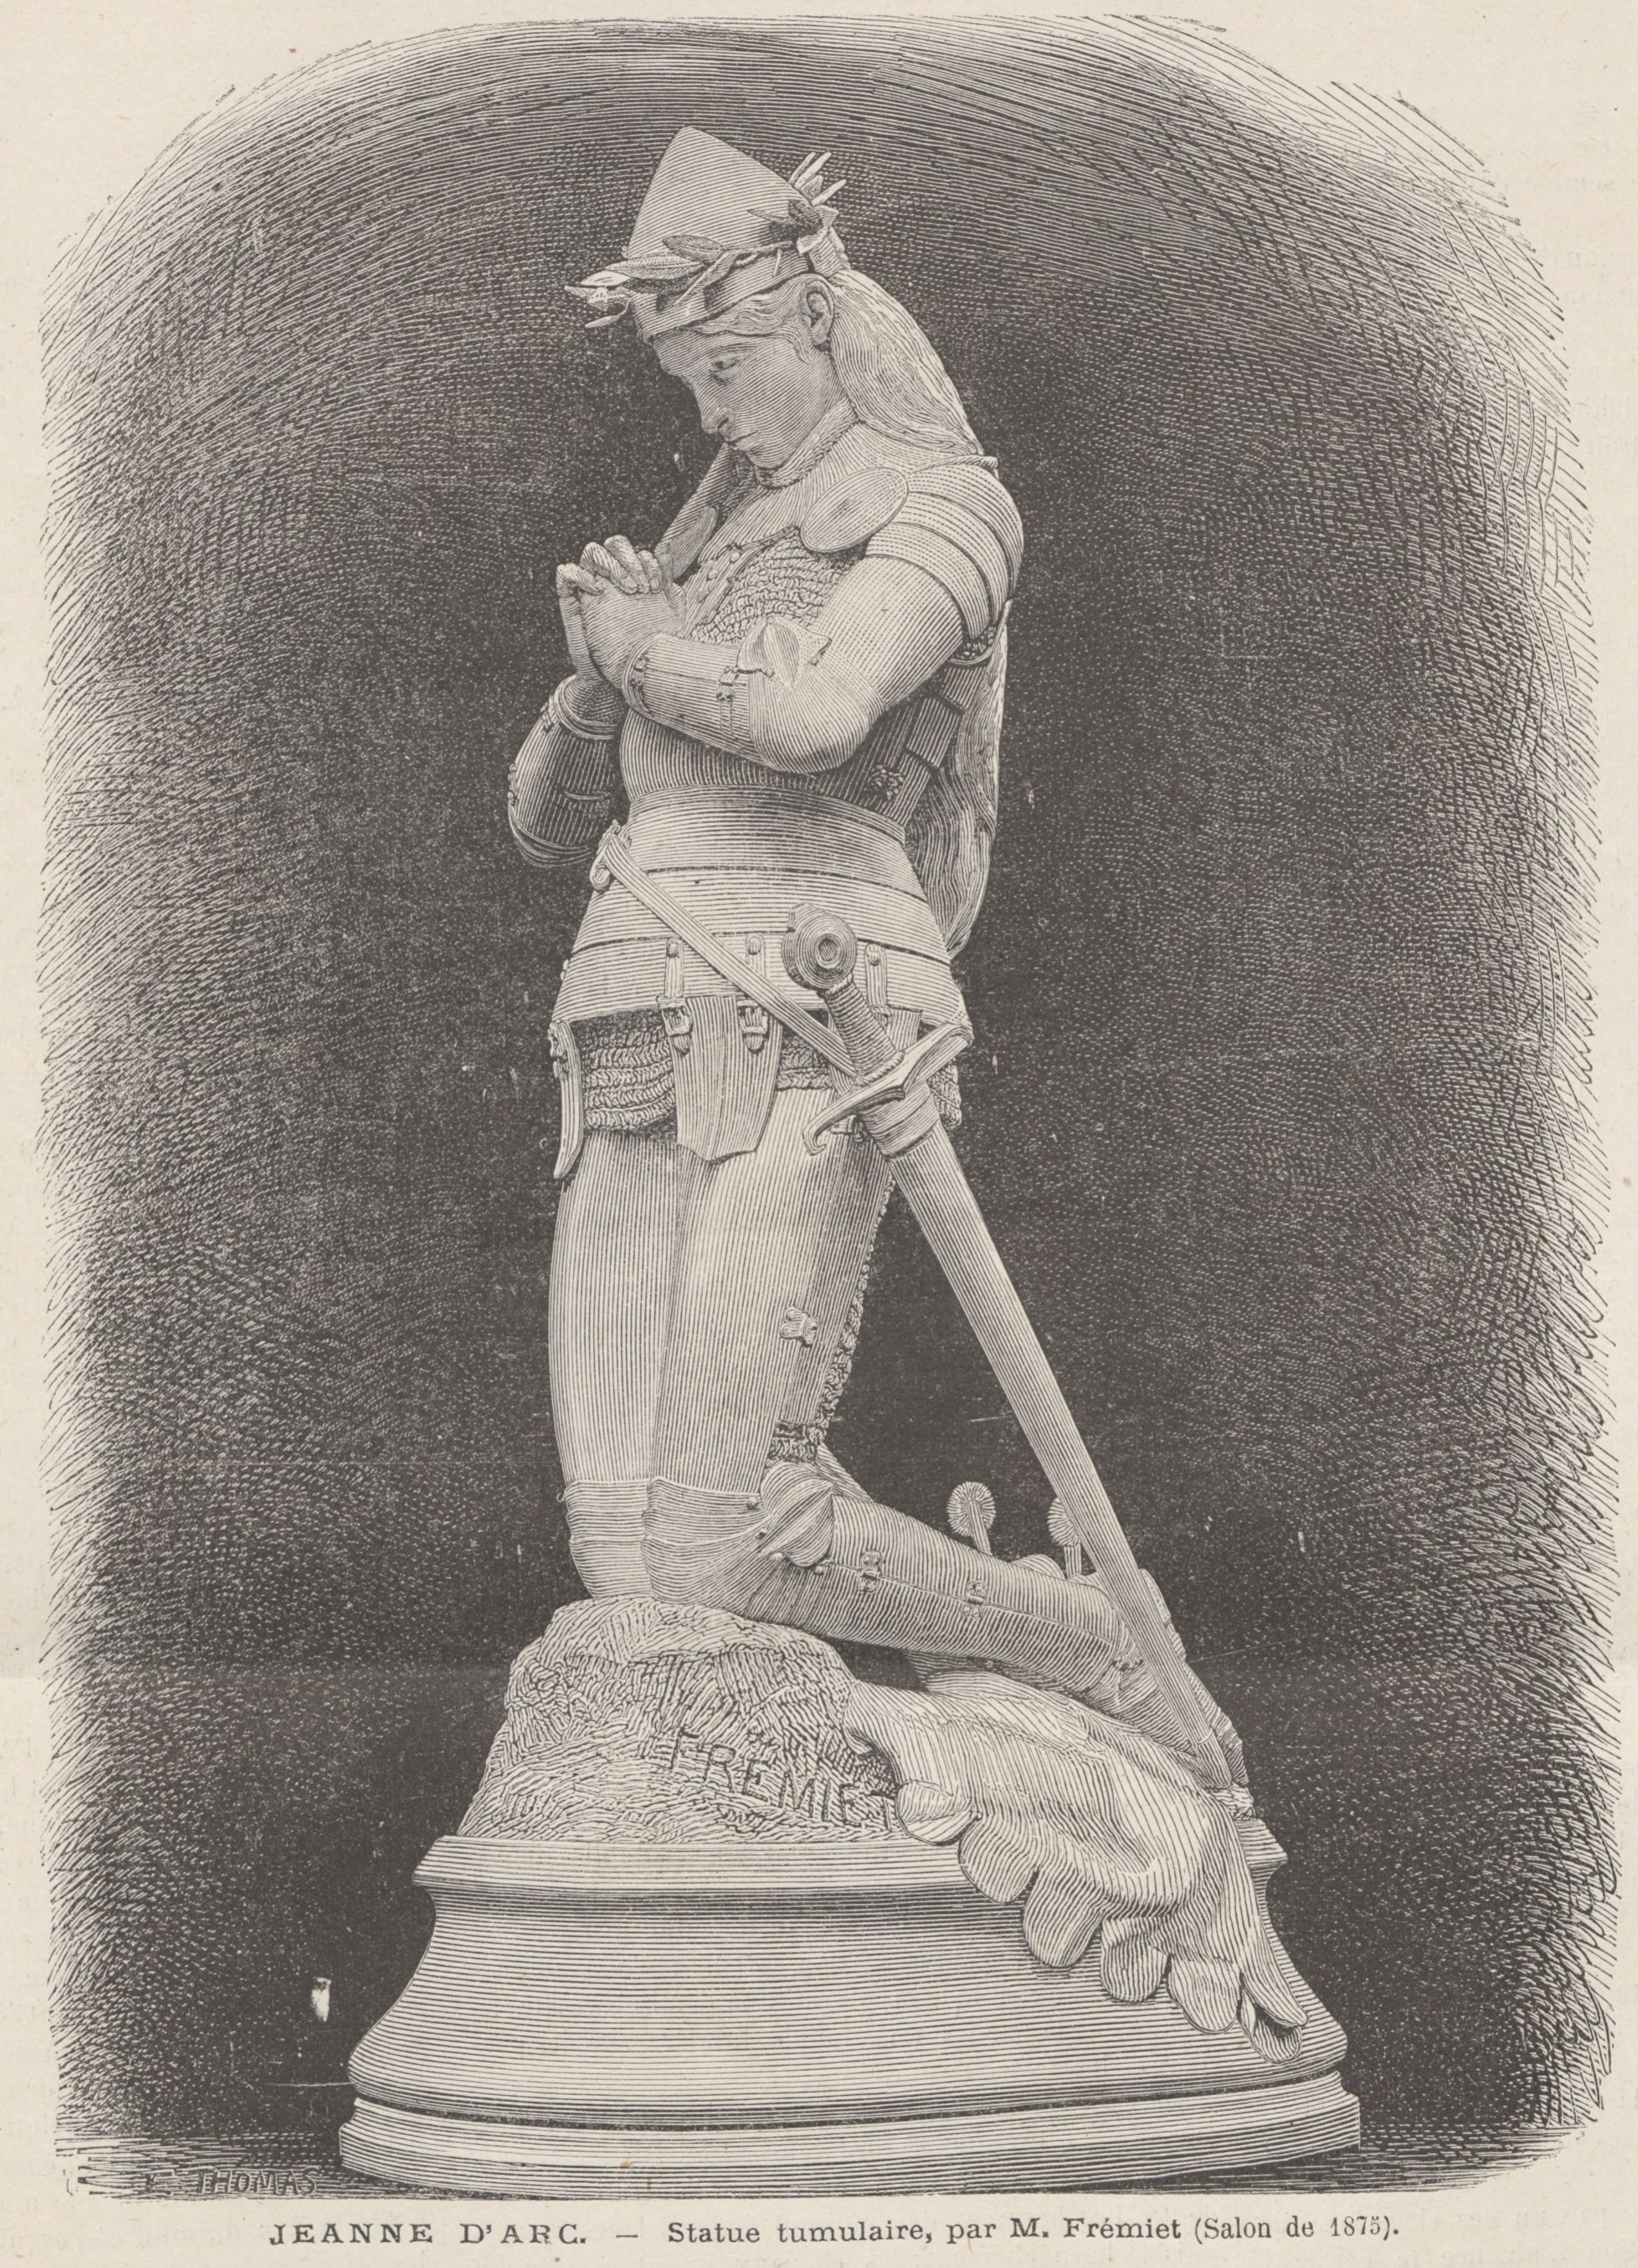 Frémiet, Jeanne d'Arc, Salon de 1875